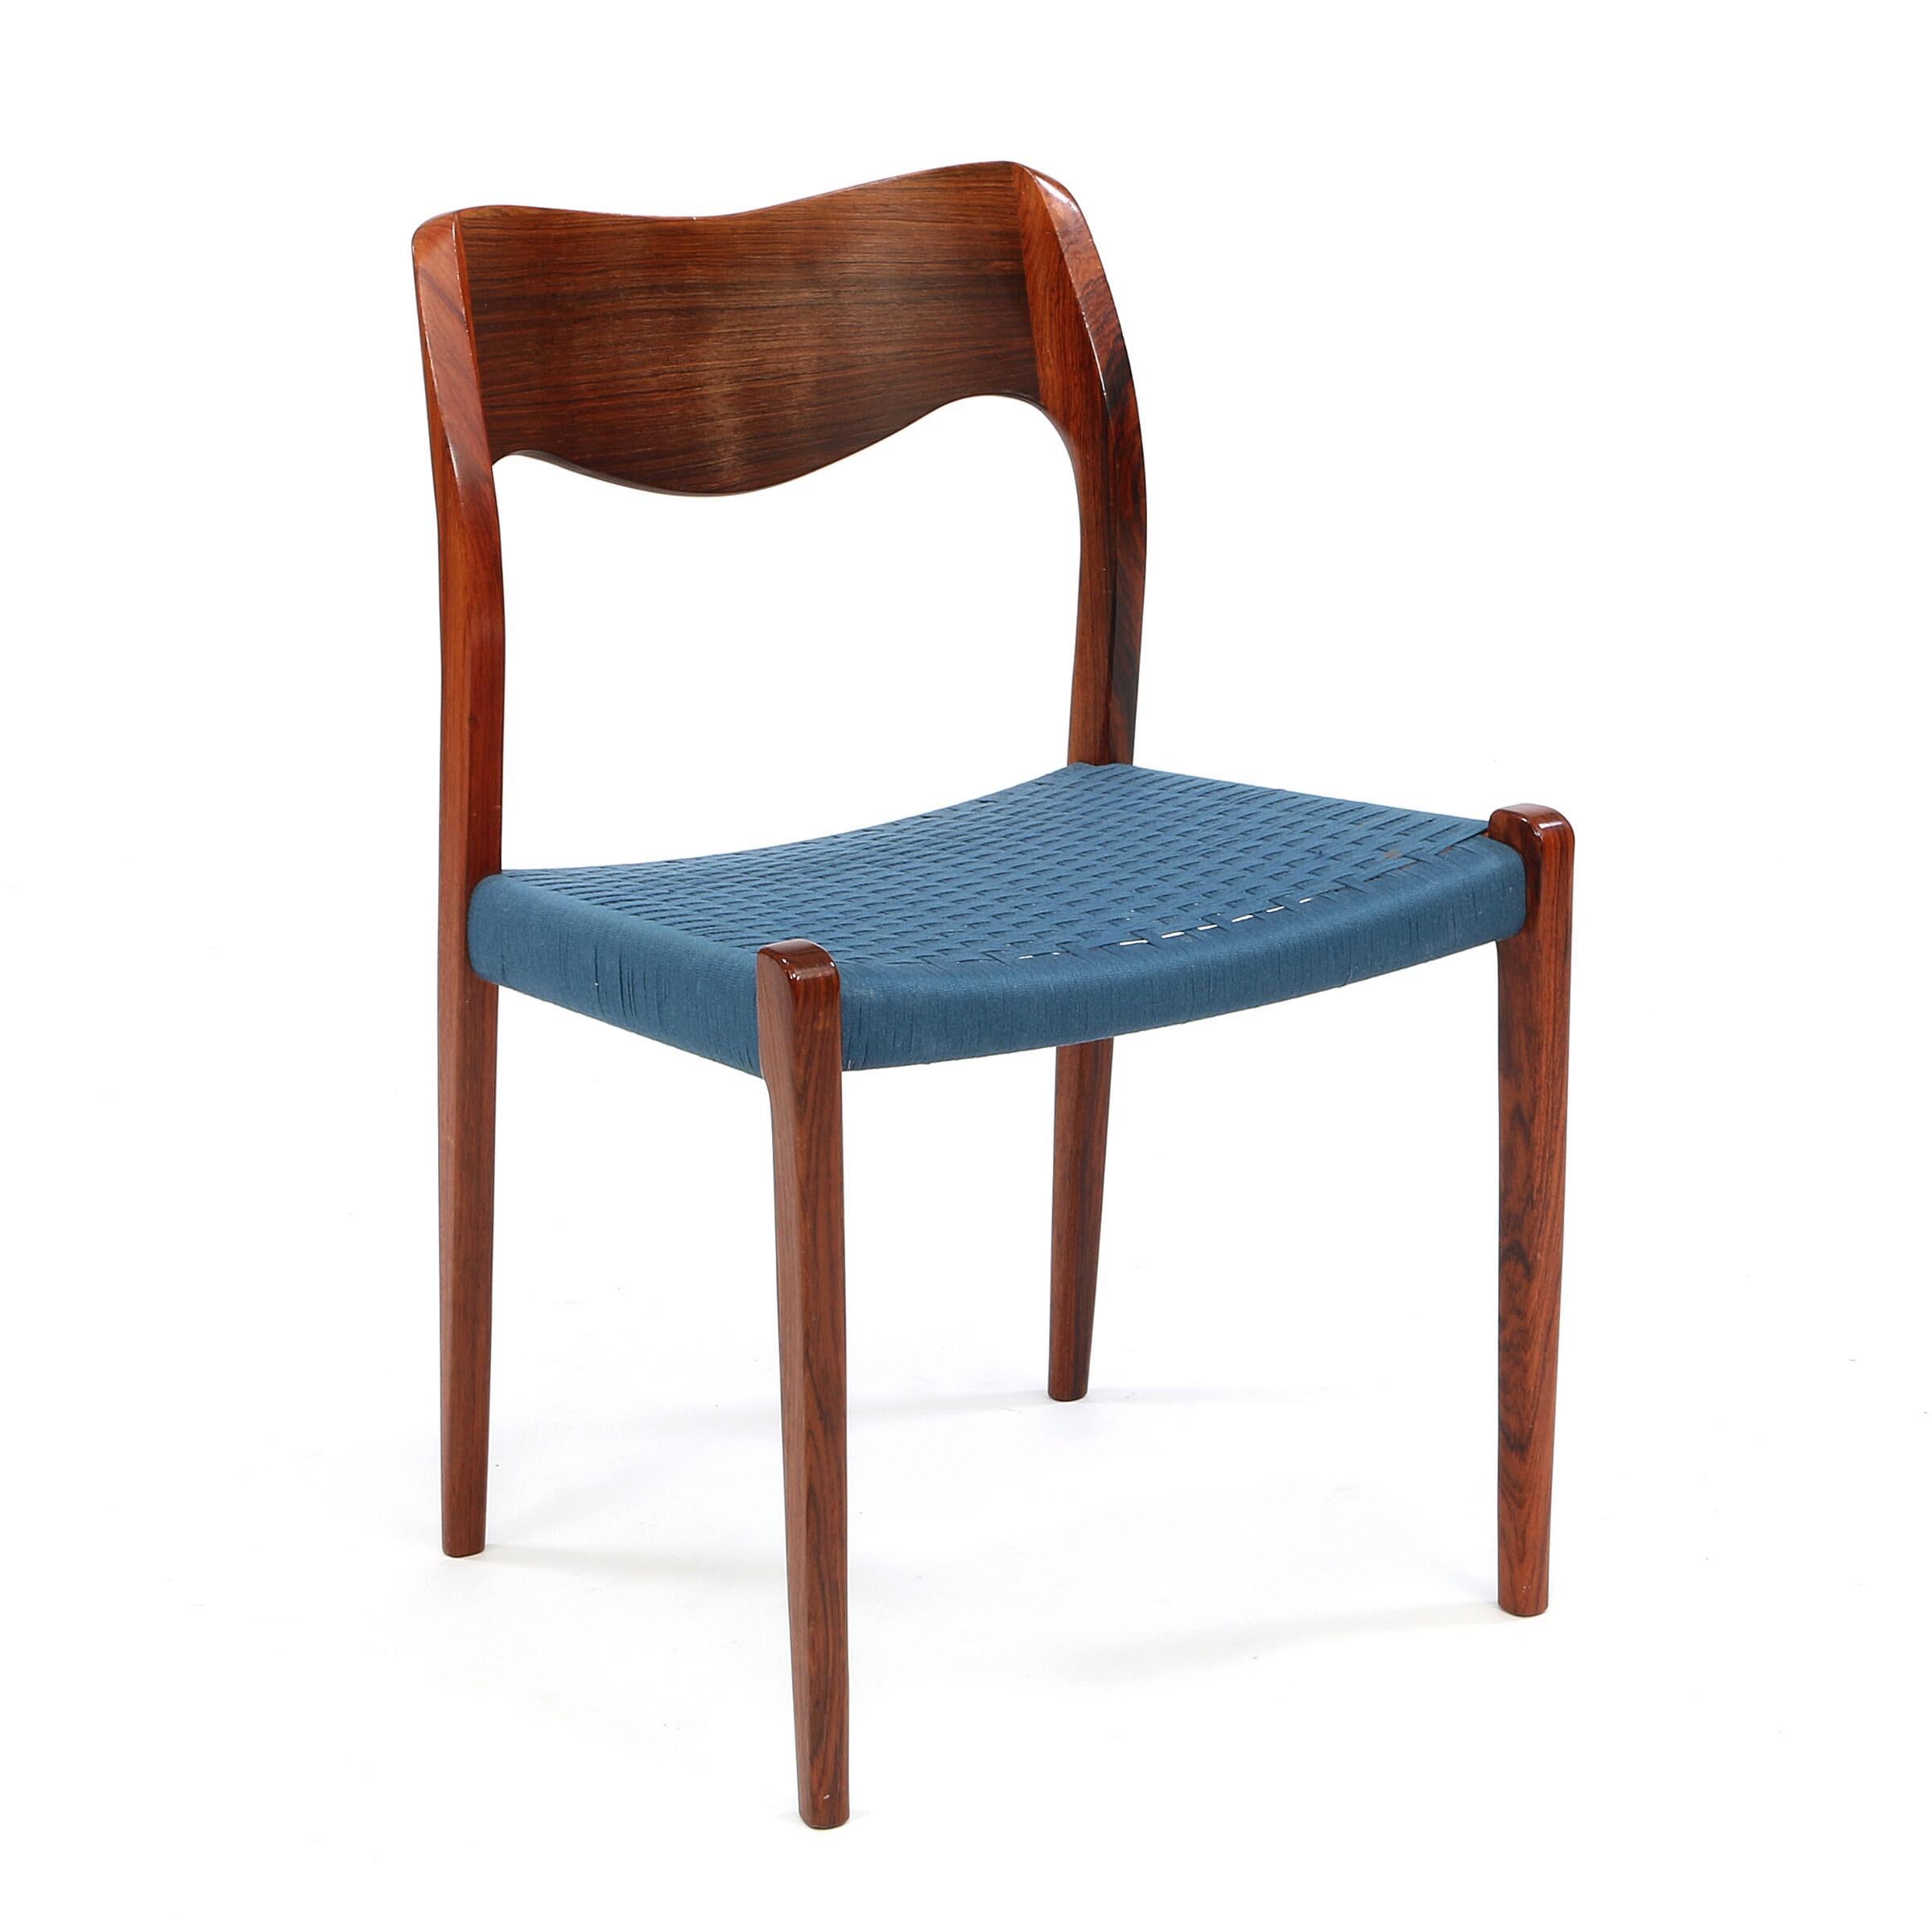 Dieses Set aus sechs Esszimmerstühlen von Niels Otto Moller mit original blauem Kordelzug wurde 1951 entworfen und in den 1970er Jahren hergestellt. Die Kordel ist trotz ihres Alters von 45-50 Jahren in ausgezeichnetem Zustand. Das Set wurde